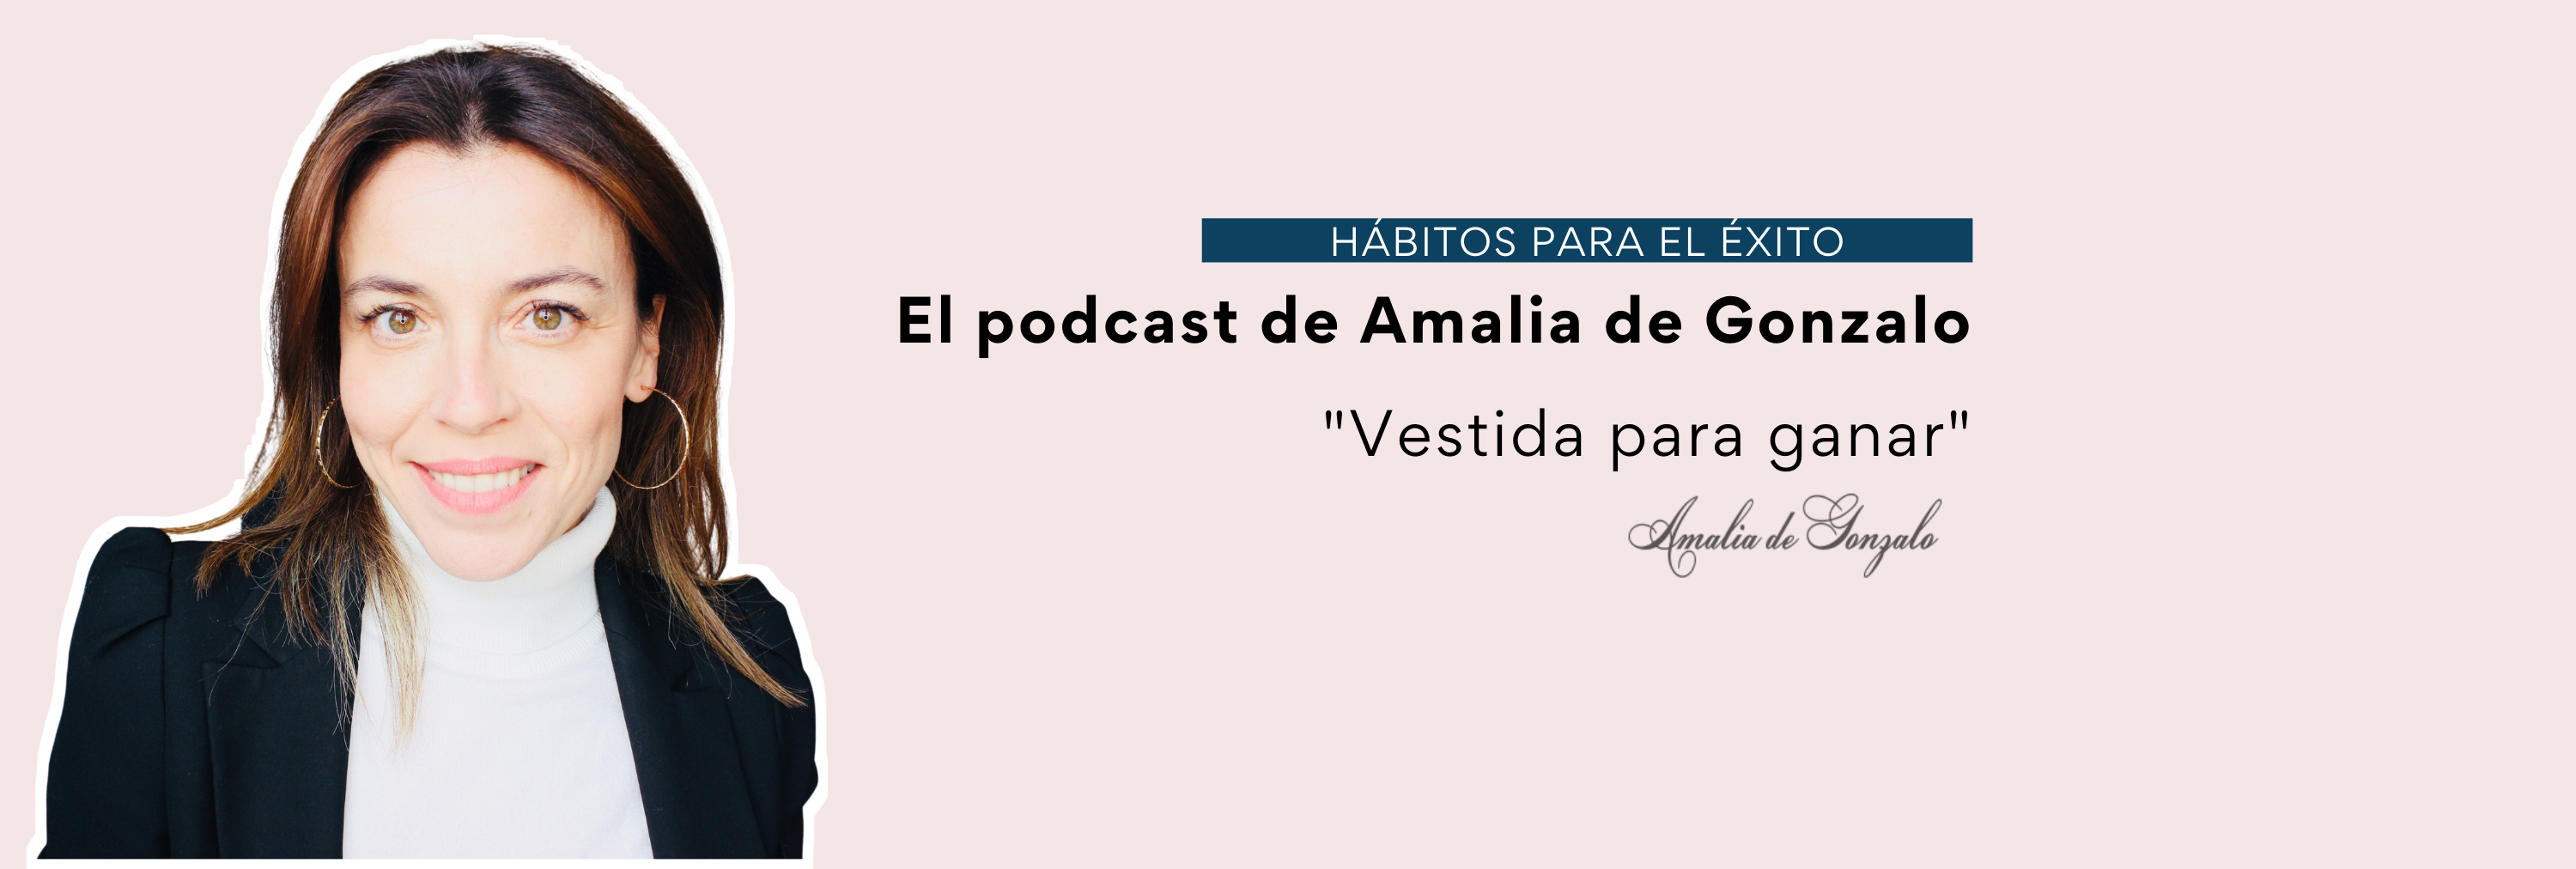 El podcast de Amalia de Gonzalo